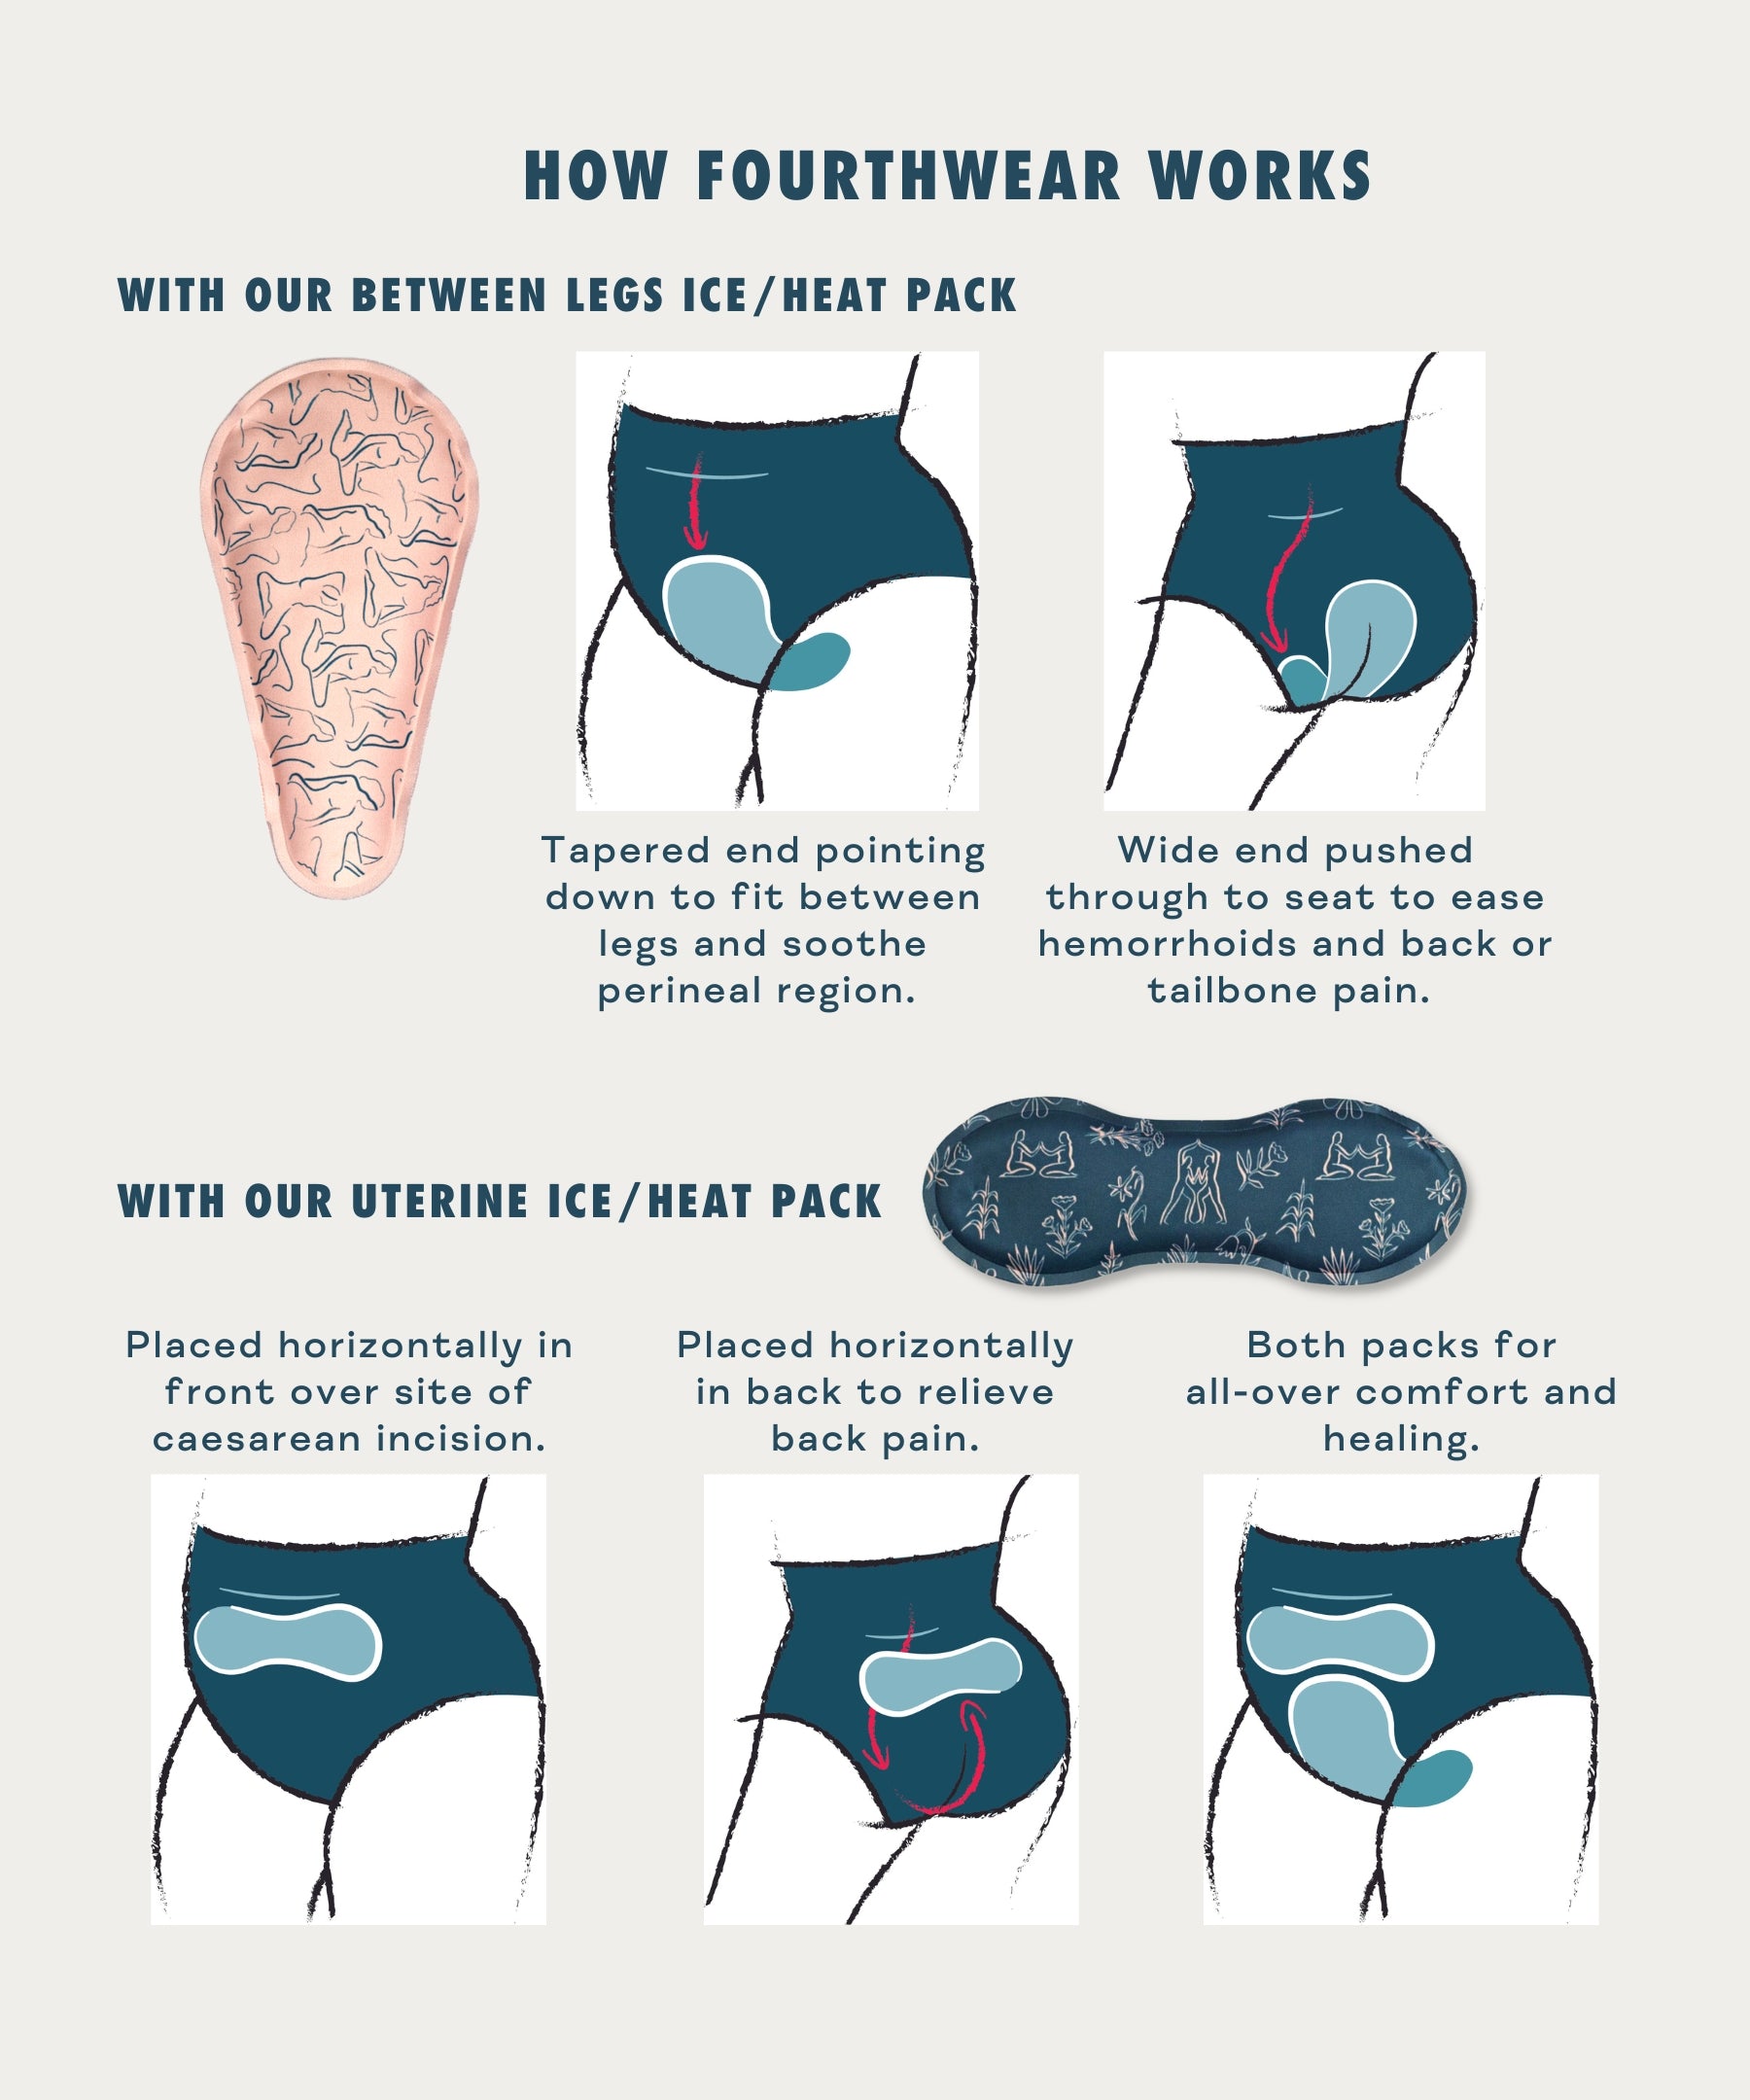 VieWear Period Comfort Underwear + Uterine Ice/Heat Bundle – Nyssa